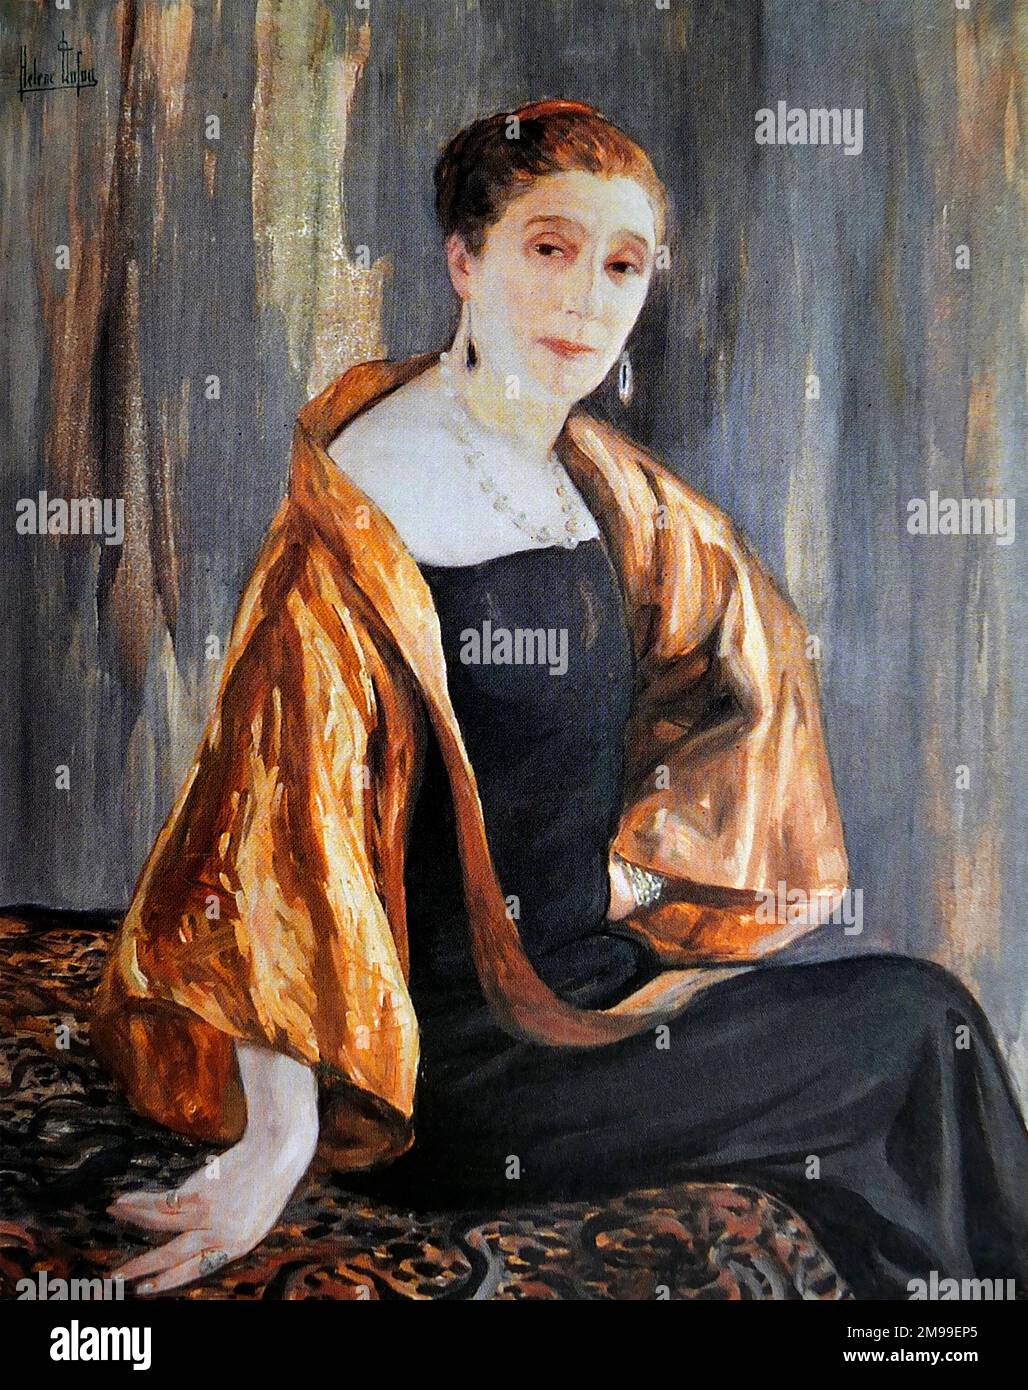 Jeanne Lanvin. Portrait of the haute-couture fashion designer Jeanne-Marie Lanvin (1867-1946), painting by Clémentine-Hélène Dufau, 1925 Stock Photo